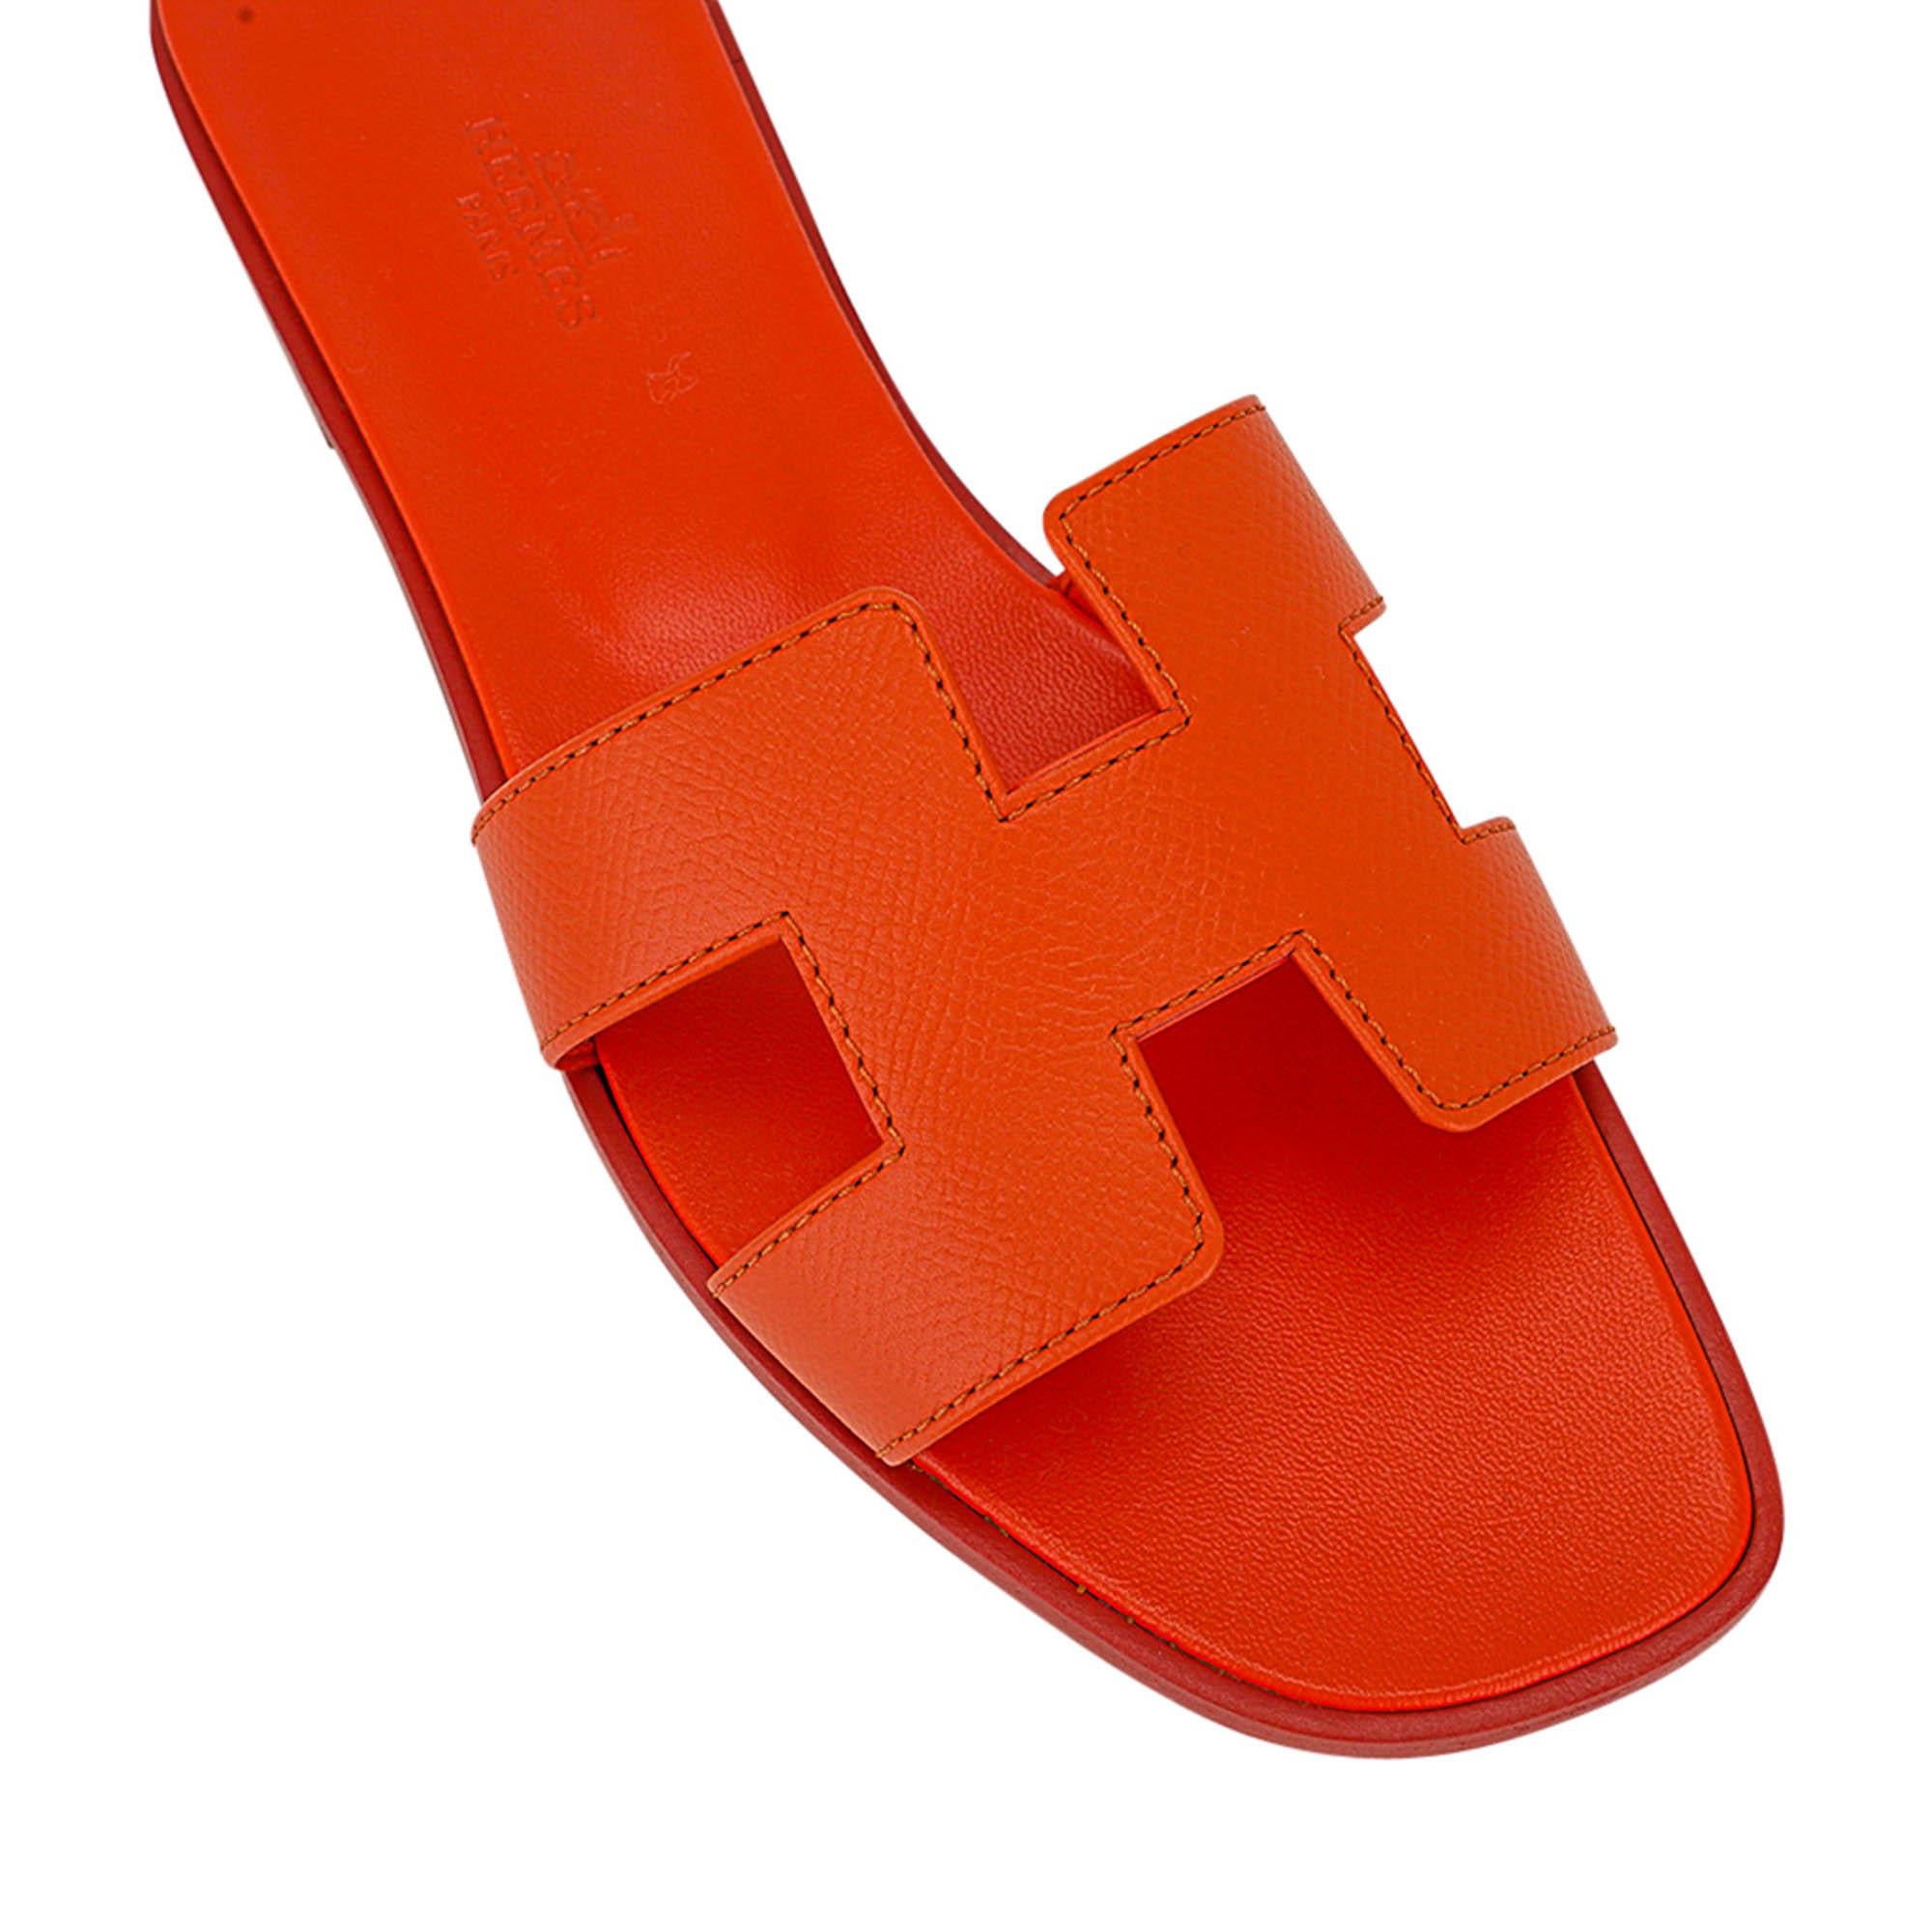 Mightychic propose des sandales Hermes Oran de couleur orange.
Sandale classique désaltérante en cuir d'epsom orange Hermès Oran. 
L'emblématique découpe en H sur le dessus du pied.
Semelle intérieure en cuir de veau gaufré assorti.
Talon en bois et